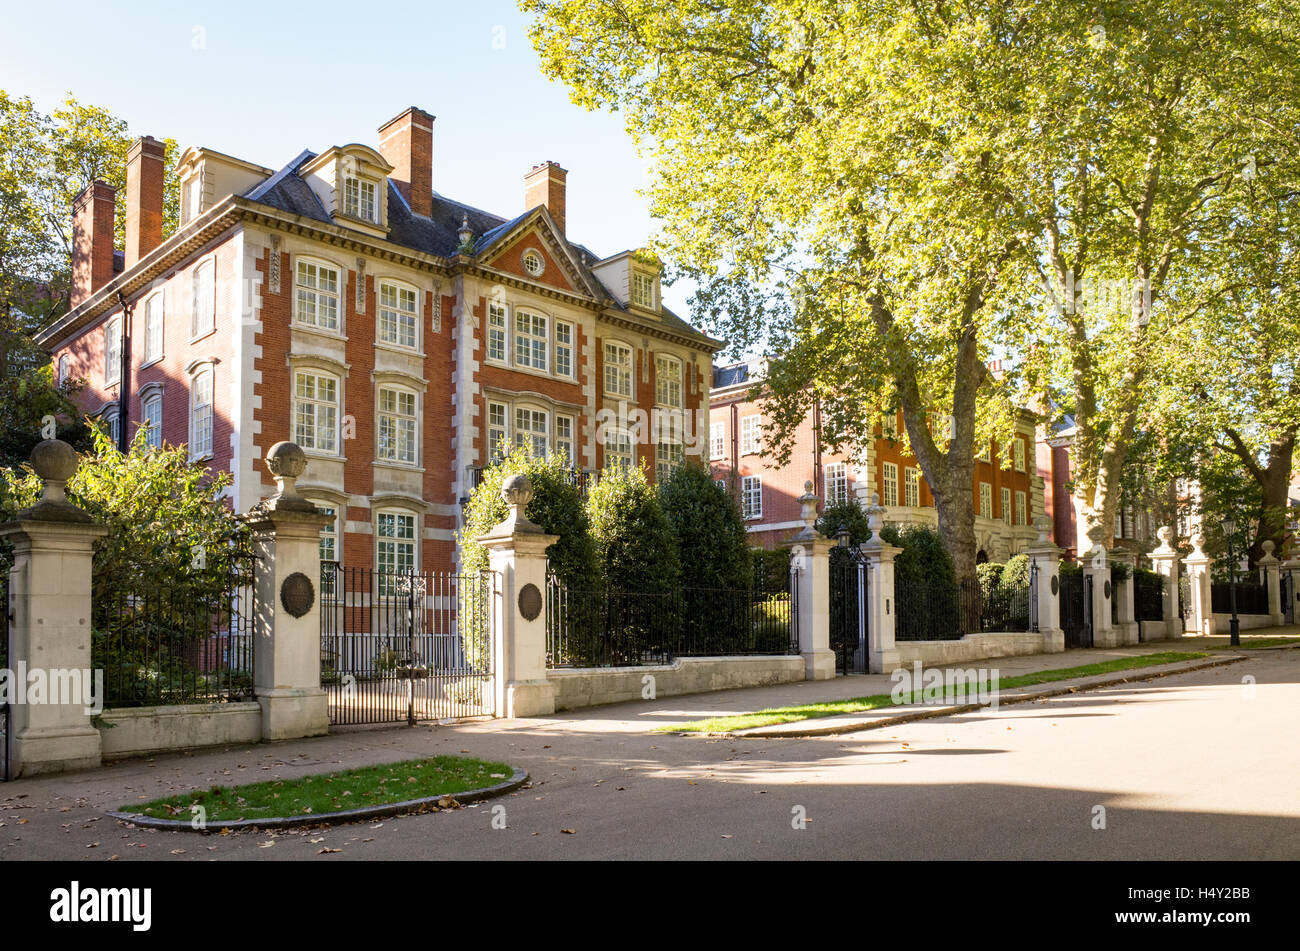 Hôtels particuliers dans les jardins du palais de Kensington, London, England, UK Banque D'Images